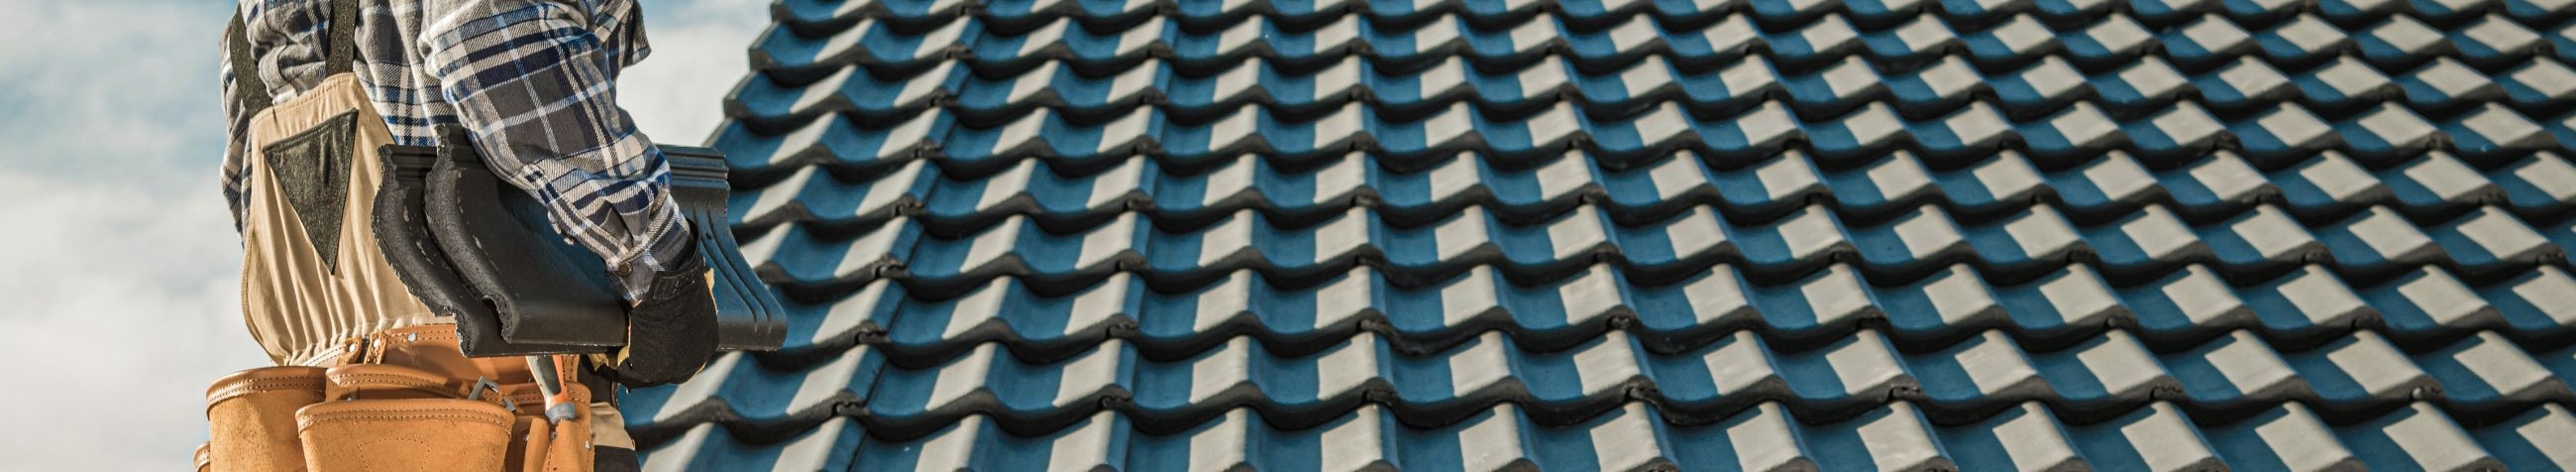 SKAR EHITUS OÜ tegeleb katusetöödega, pakkudes kvaliteetseid lahendusi viilkatuste ehituseks ja SBS katuste paigalduseks.